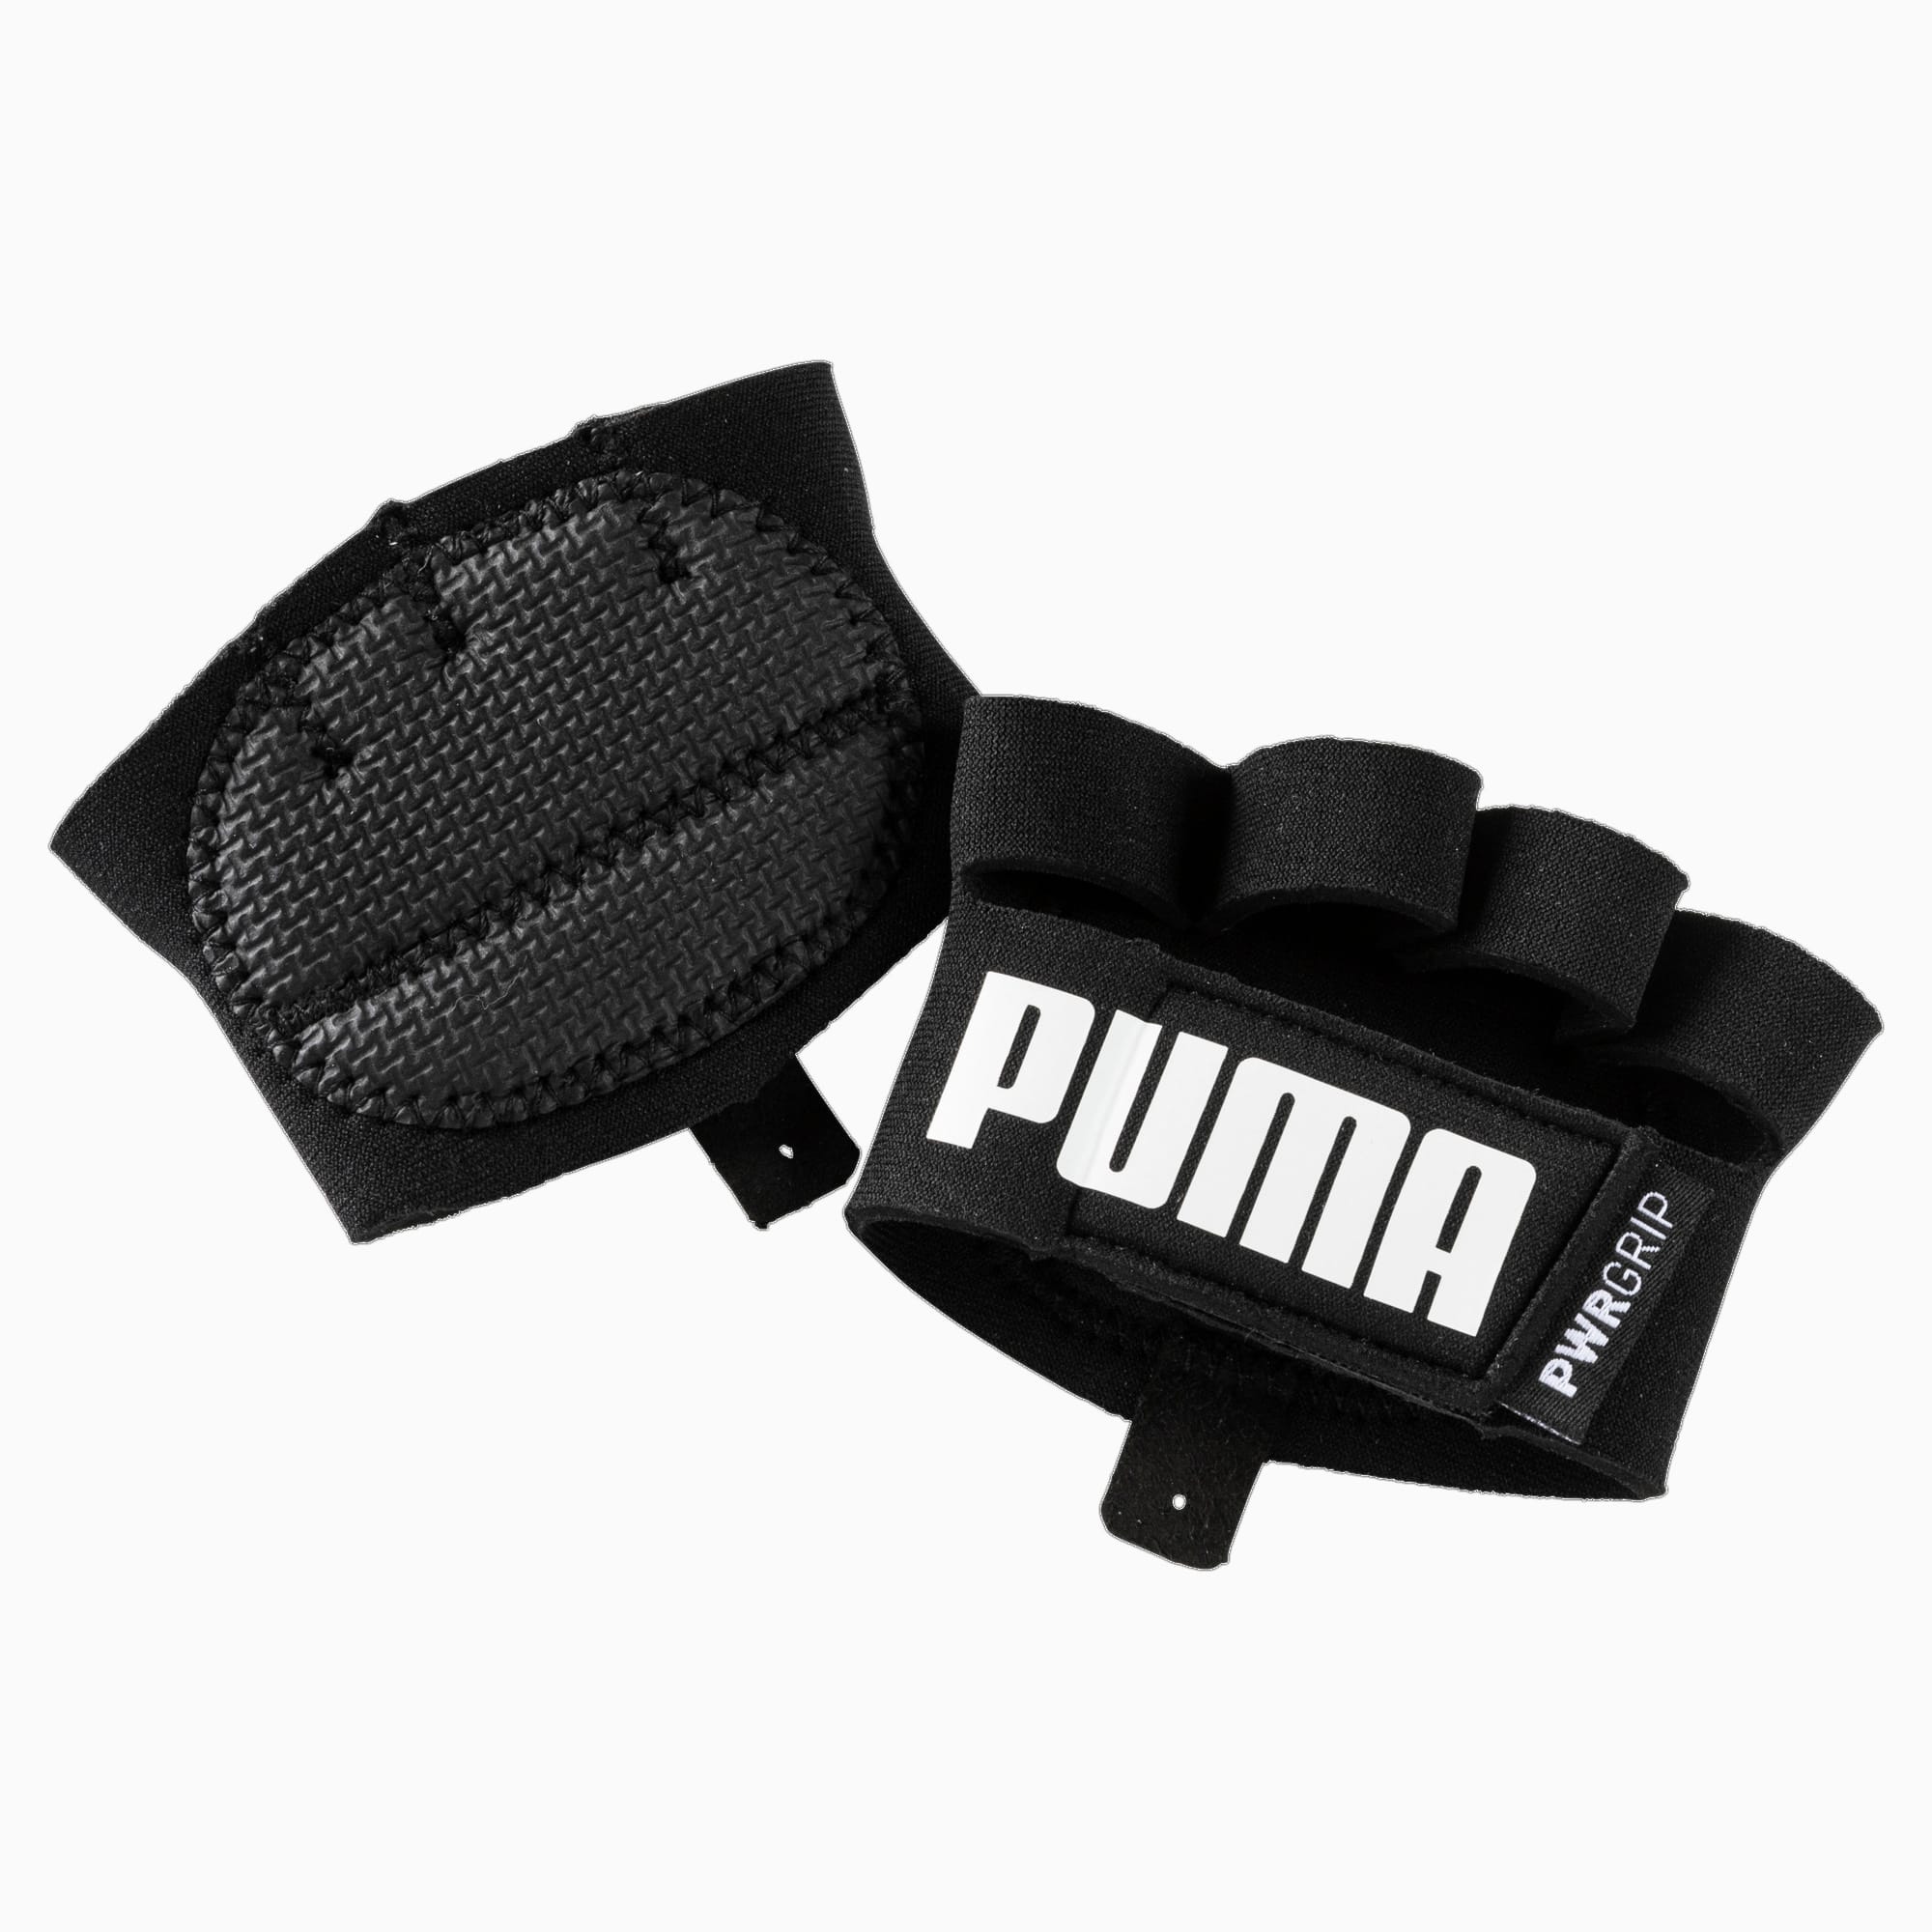 Image of PUMA Training Essential Grip Handschuhe | Mit Aucun | Schwarz/Weiß | Größe: L